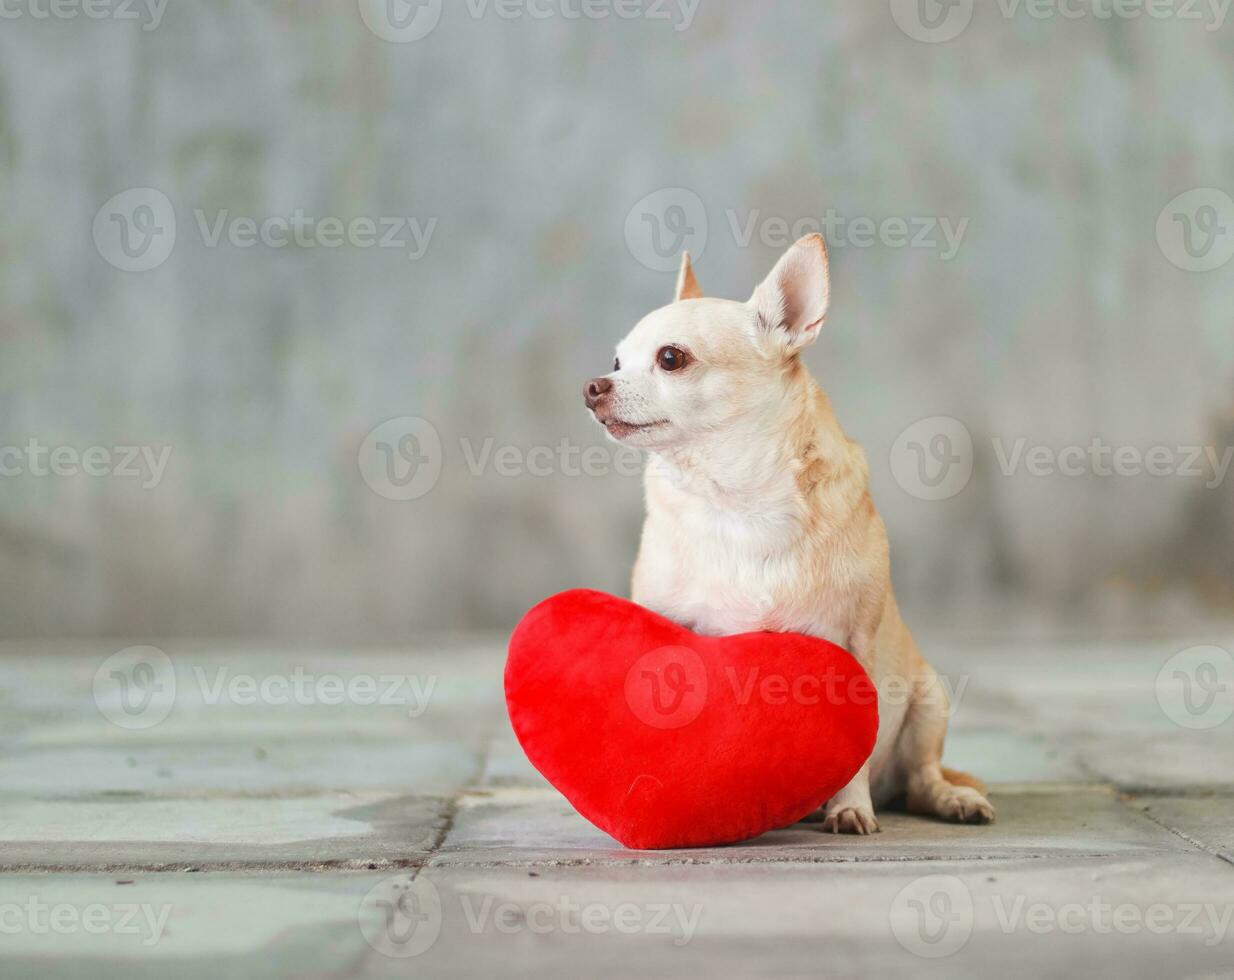 Marrone corto capelli chihuahua cani seduta con rosso cuore forma cuscino su sfocato piastrella pavimento e cemento parete San Valentino giorno concetto. foto